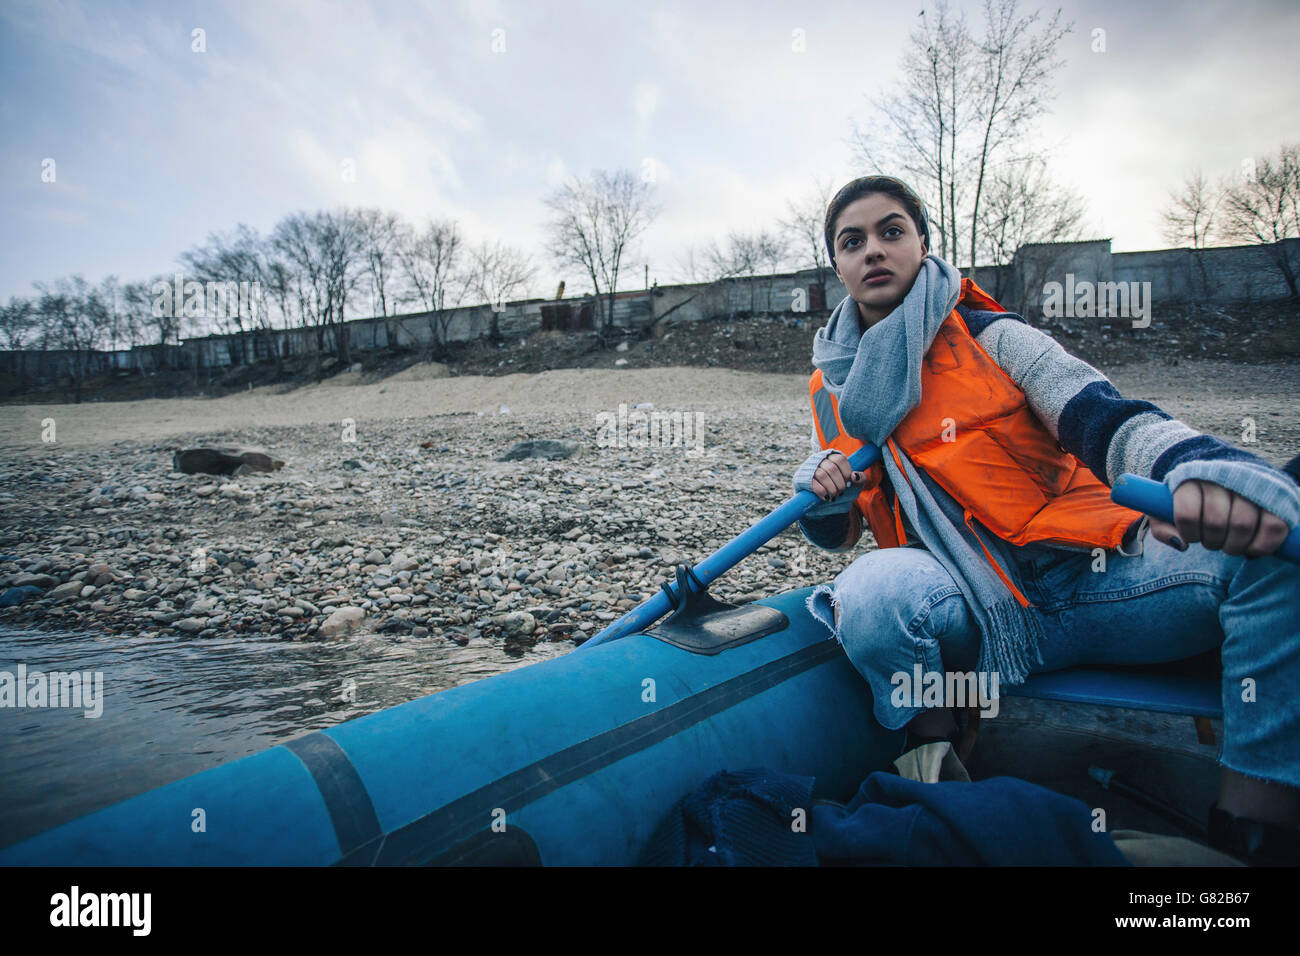 Ragazza adolescente che indossa il giubbotto di salvataggio mentre il rafting nel lago Foto Stock